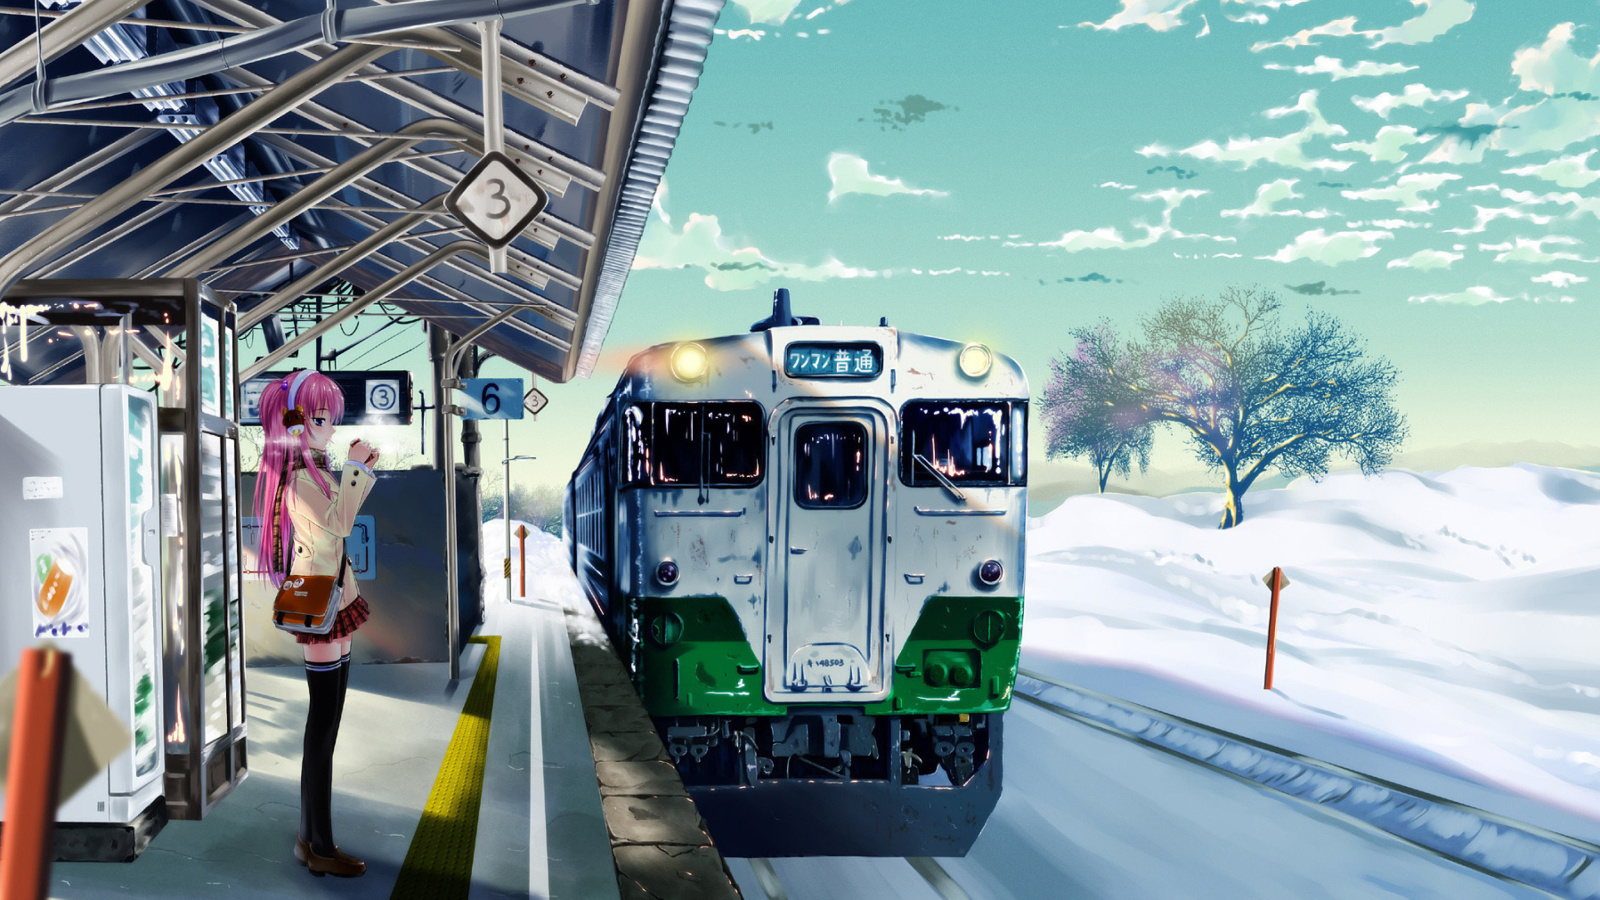 Обои Anime Girl on Snow Train Stations 1600x900